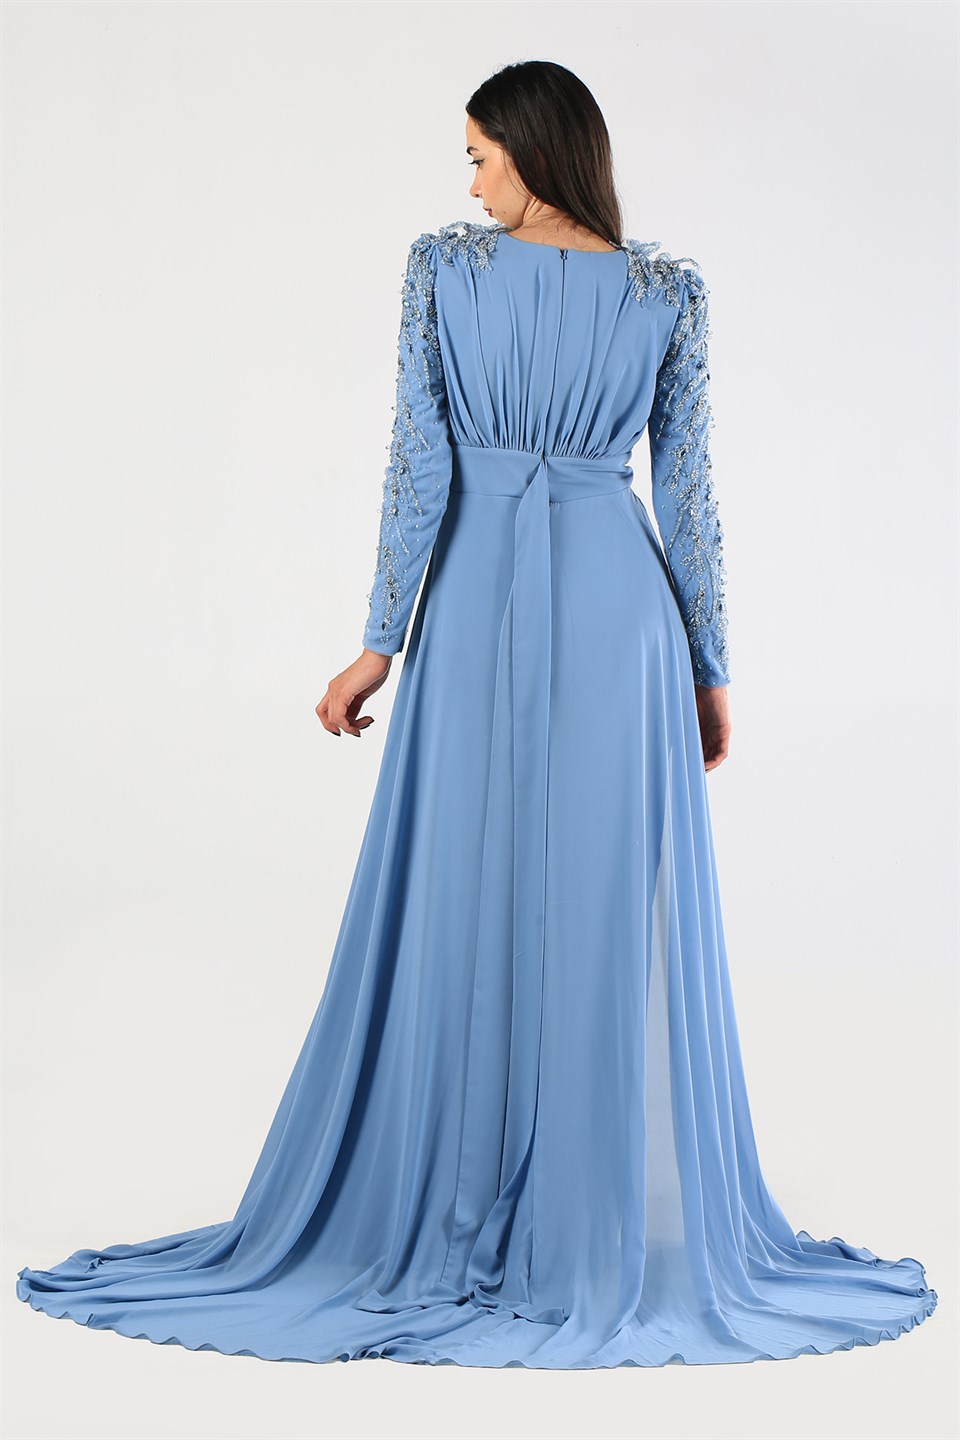 Kenzel Omuz ve Kol Taş İşlemeli Mavi Şifon Abiye Elbise (KENZEL-1100) | Wom  Boutique